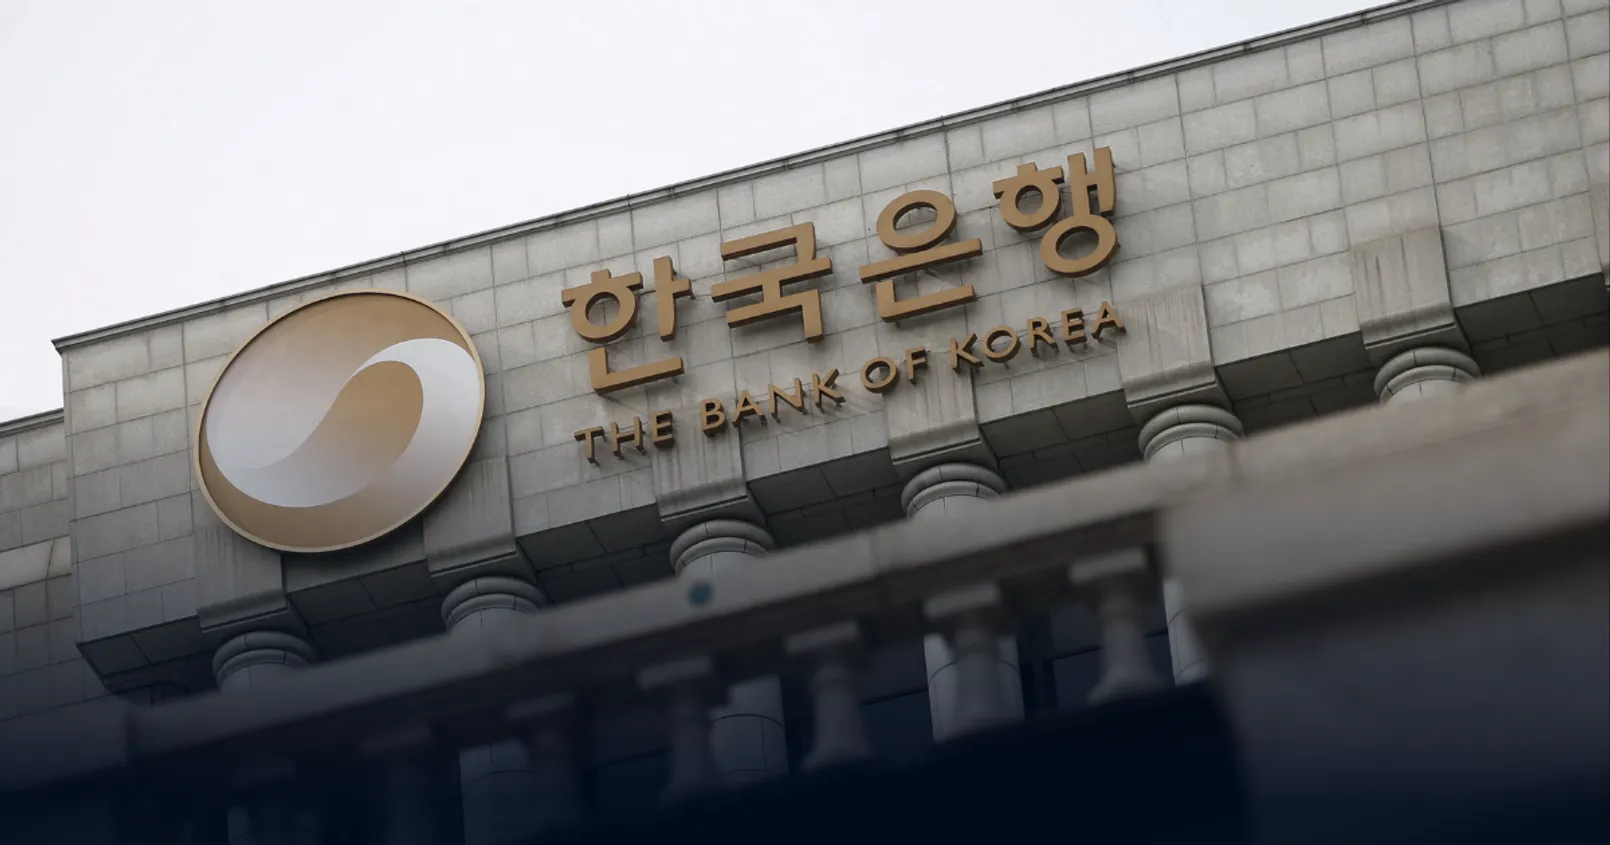 ธนาคารกลางเกาหลีใต้ ได้รับการเพิ่มสิทธิ์ ในการกำกับตรวจสอบ ธุรกิจคริปโต ในประเทศ